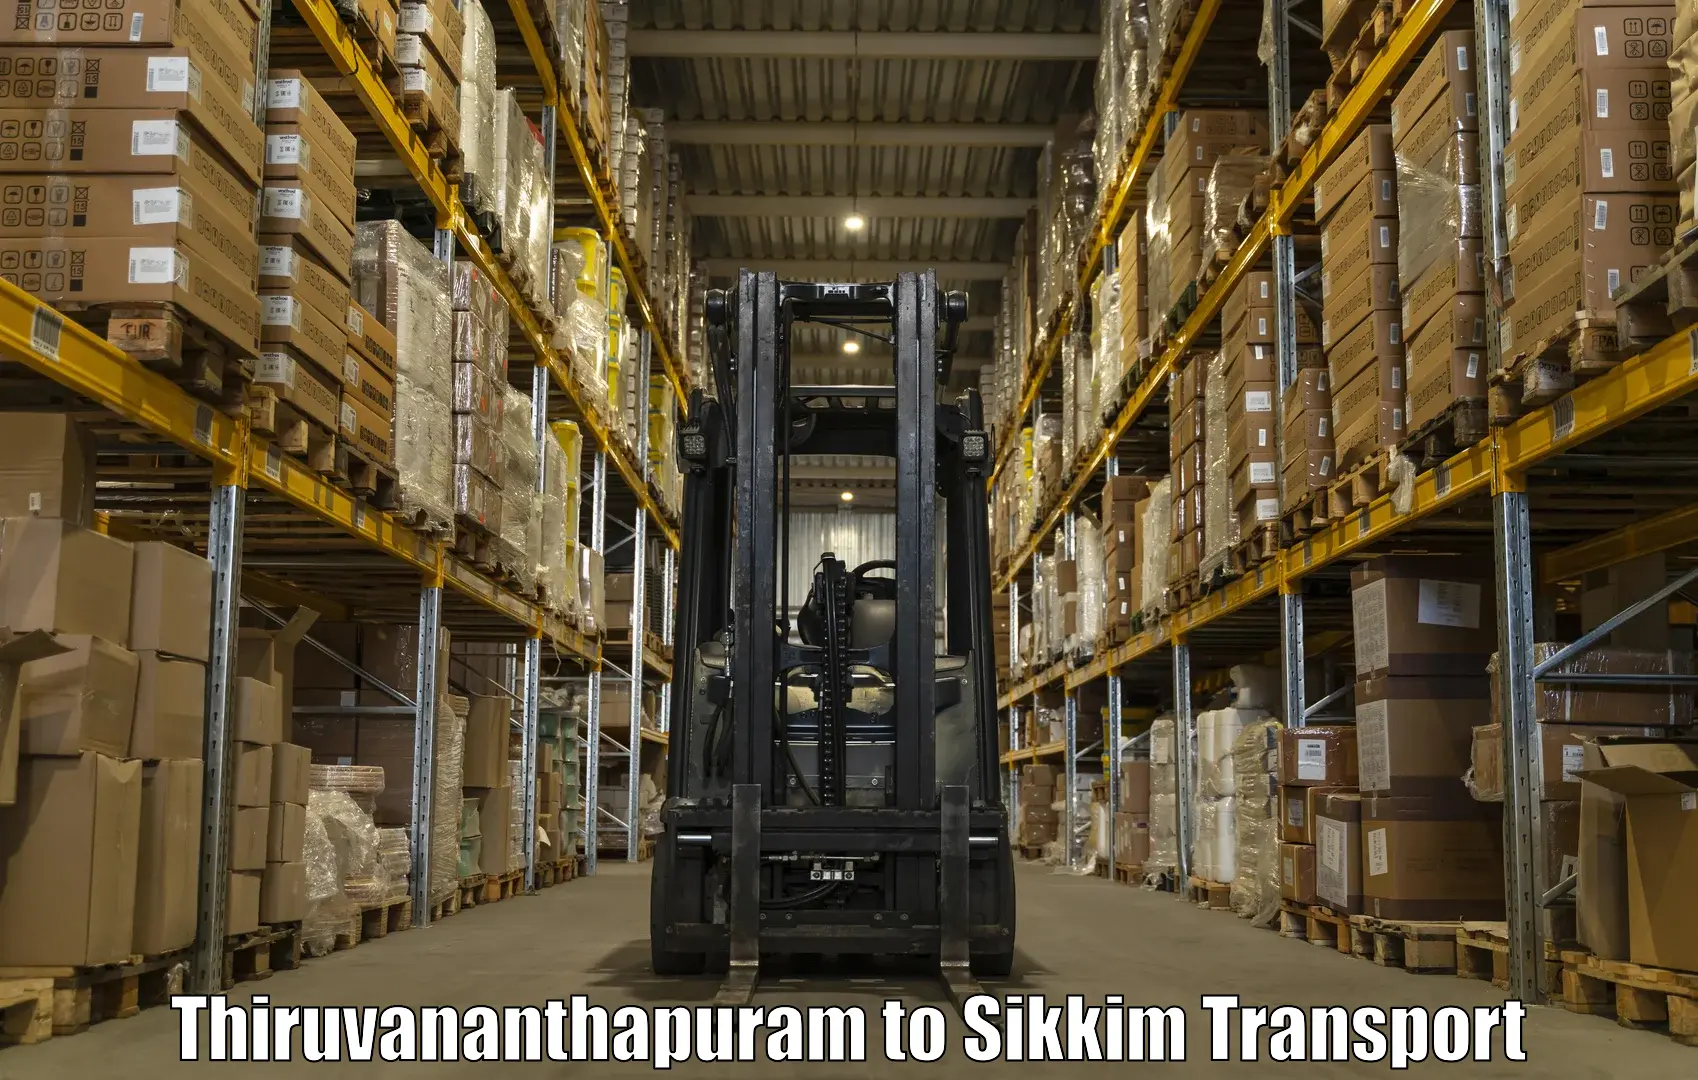 Daily transport service Thiruvananthapuram to Ravangla